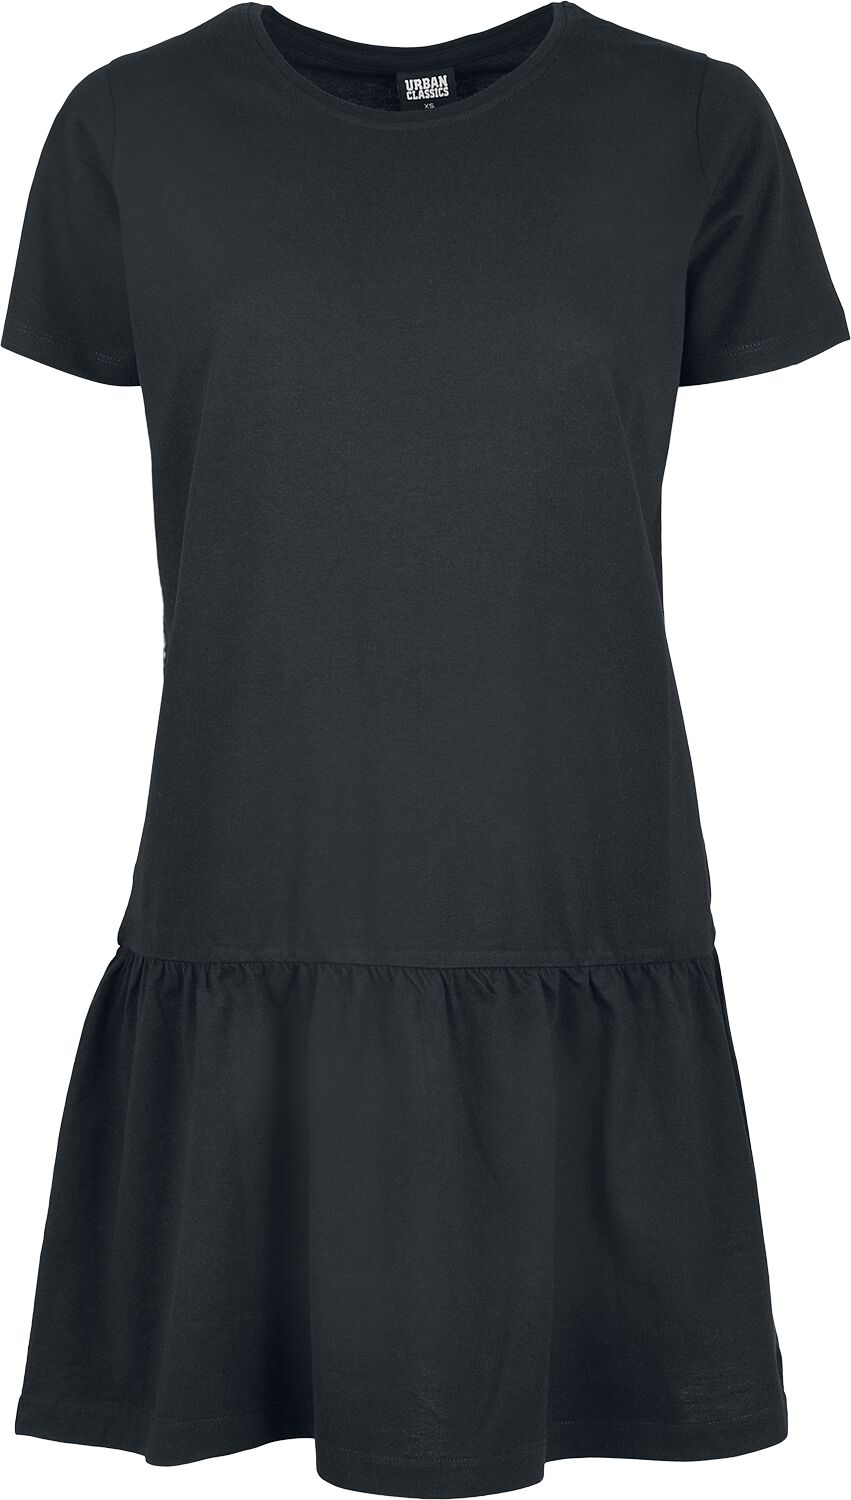 Urban Classics Kurzes Kleid - Ladies Valence Tee Dress - XS bis 5XL - für Damen - Größe XS - schwarz